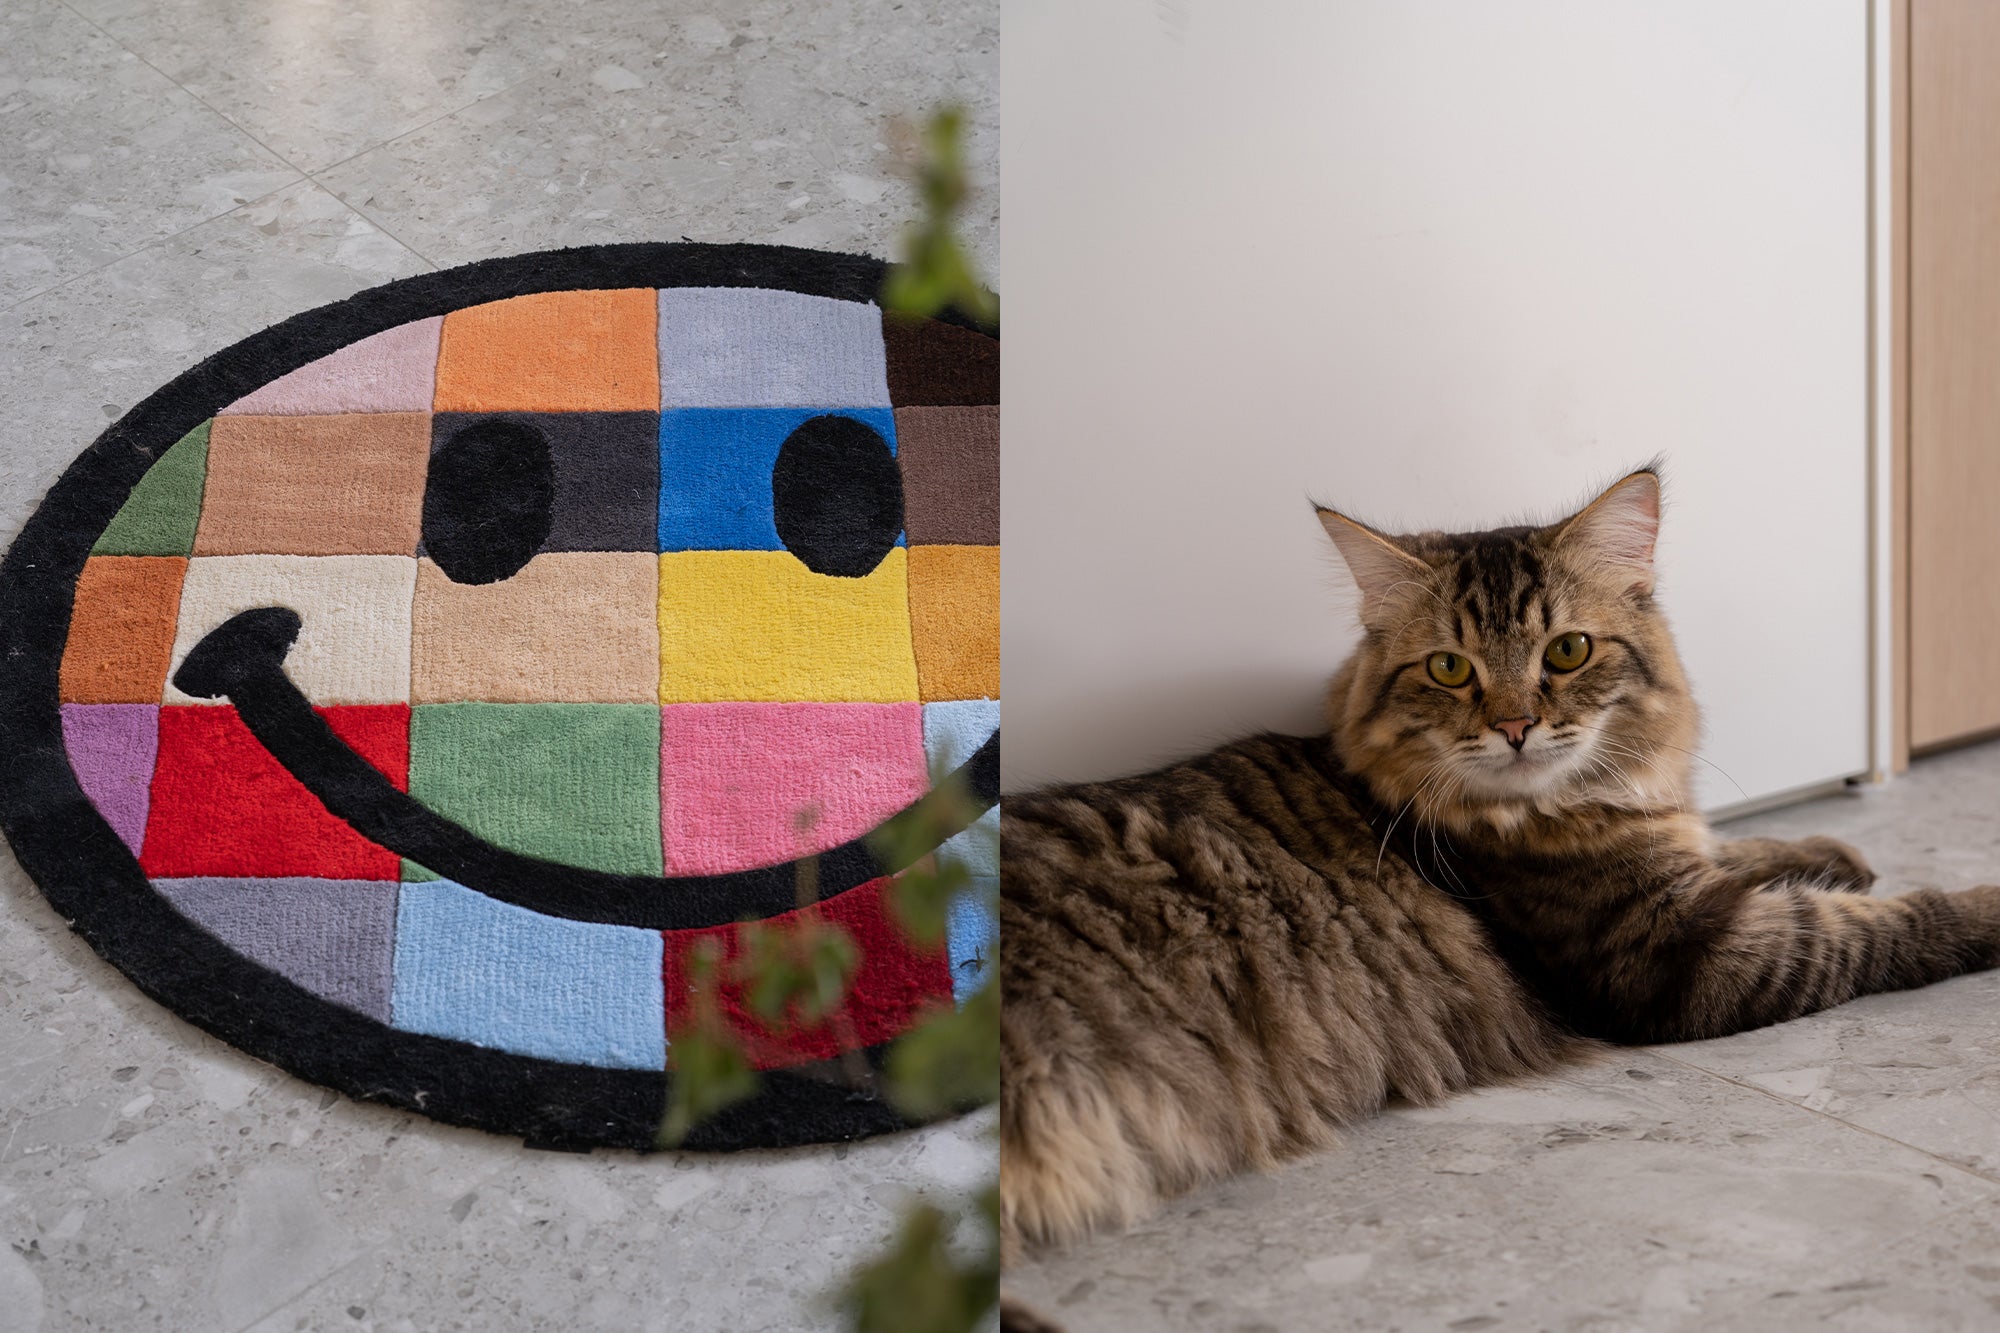 Smiley floor mat and cat